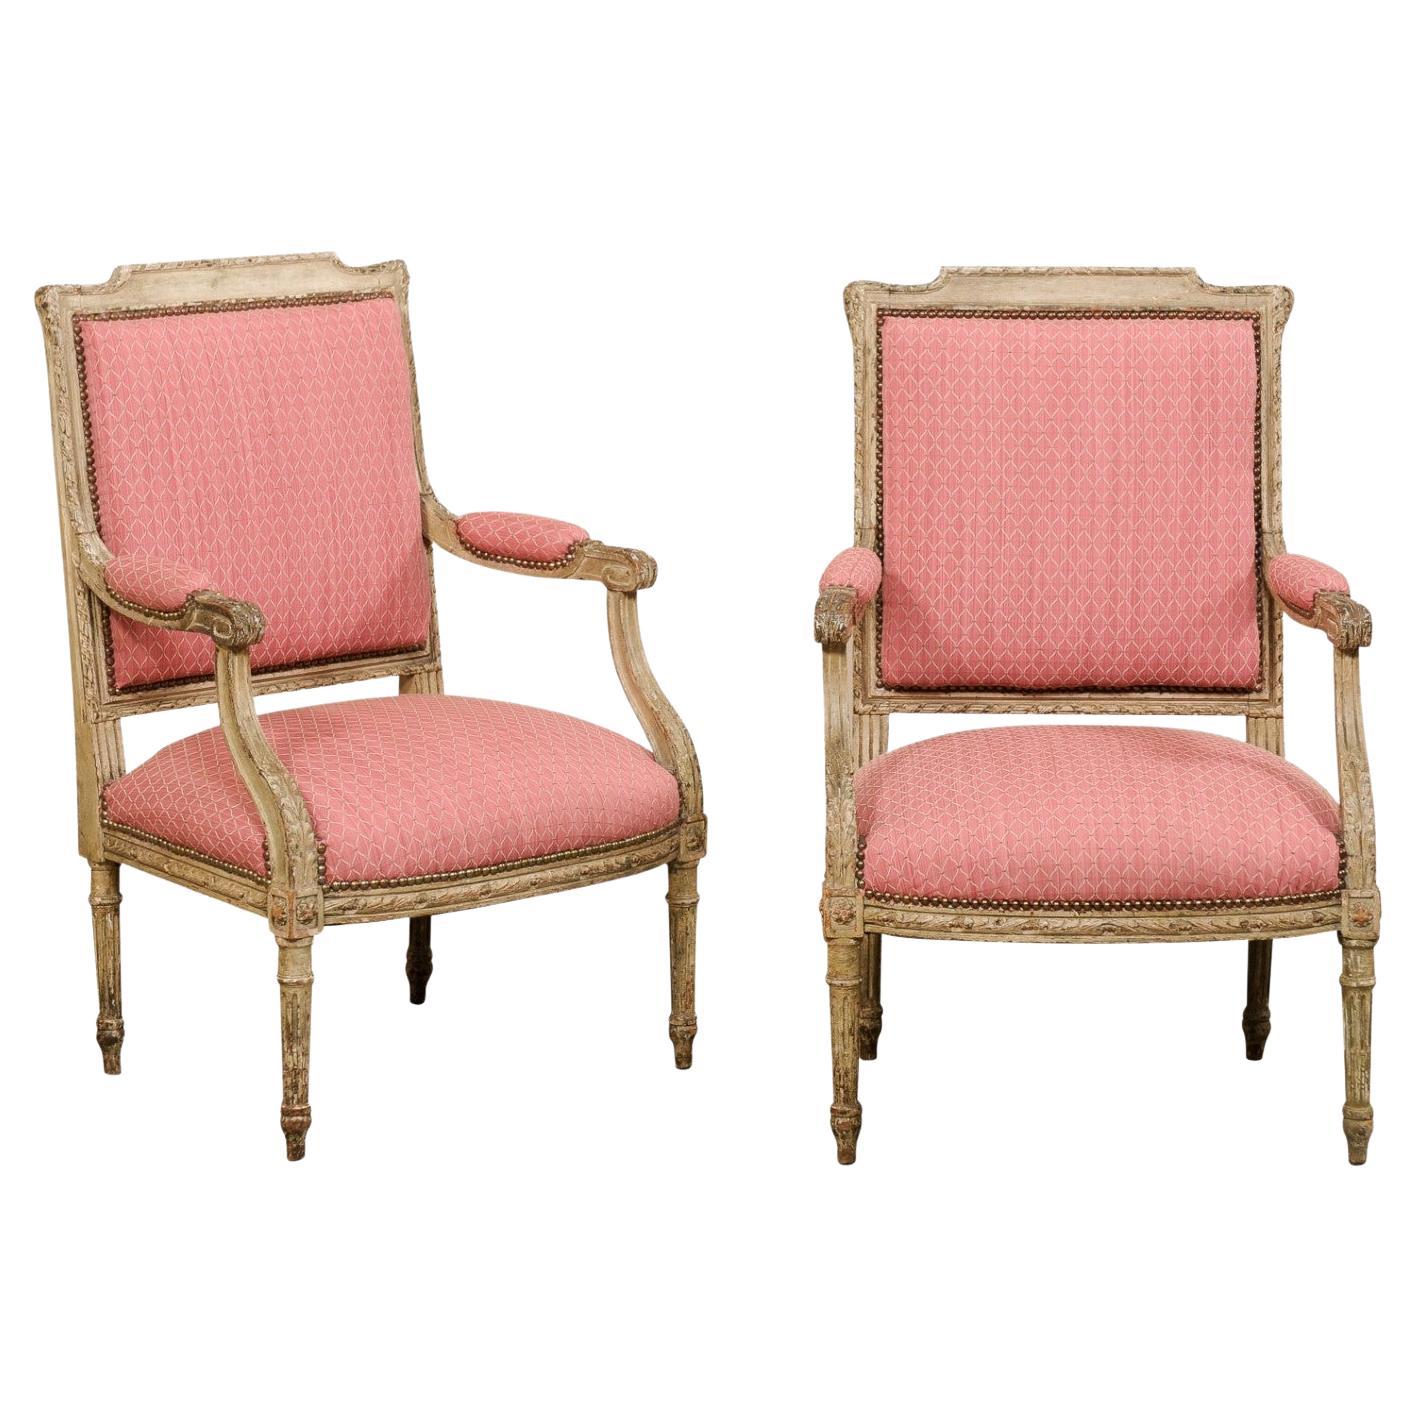 Paire de fauteuils français anciens de style Louis XV avec finition en bois d'origine